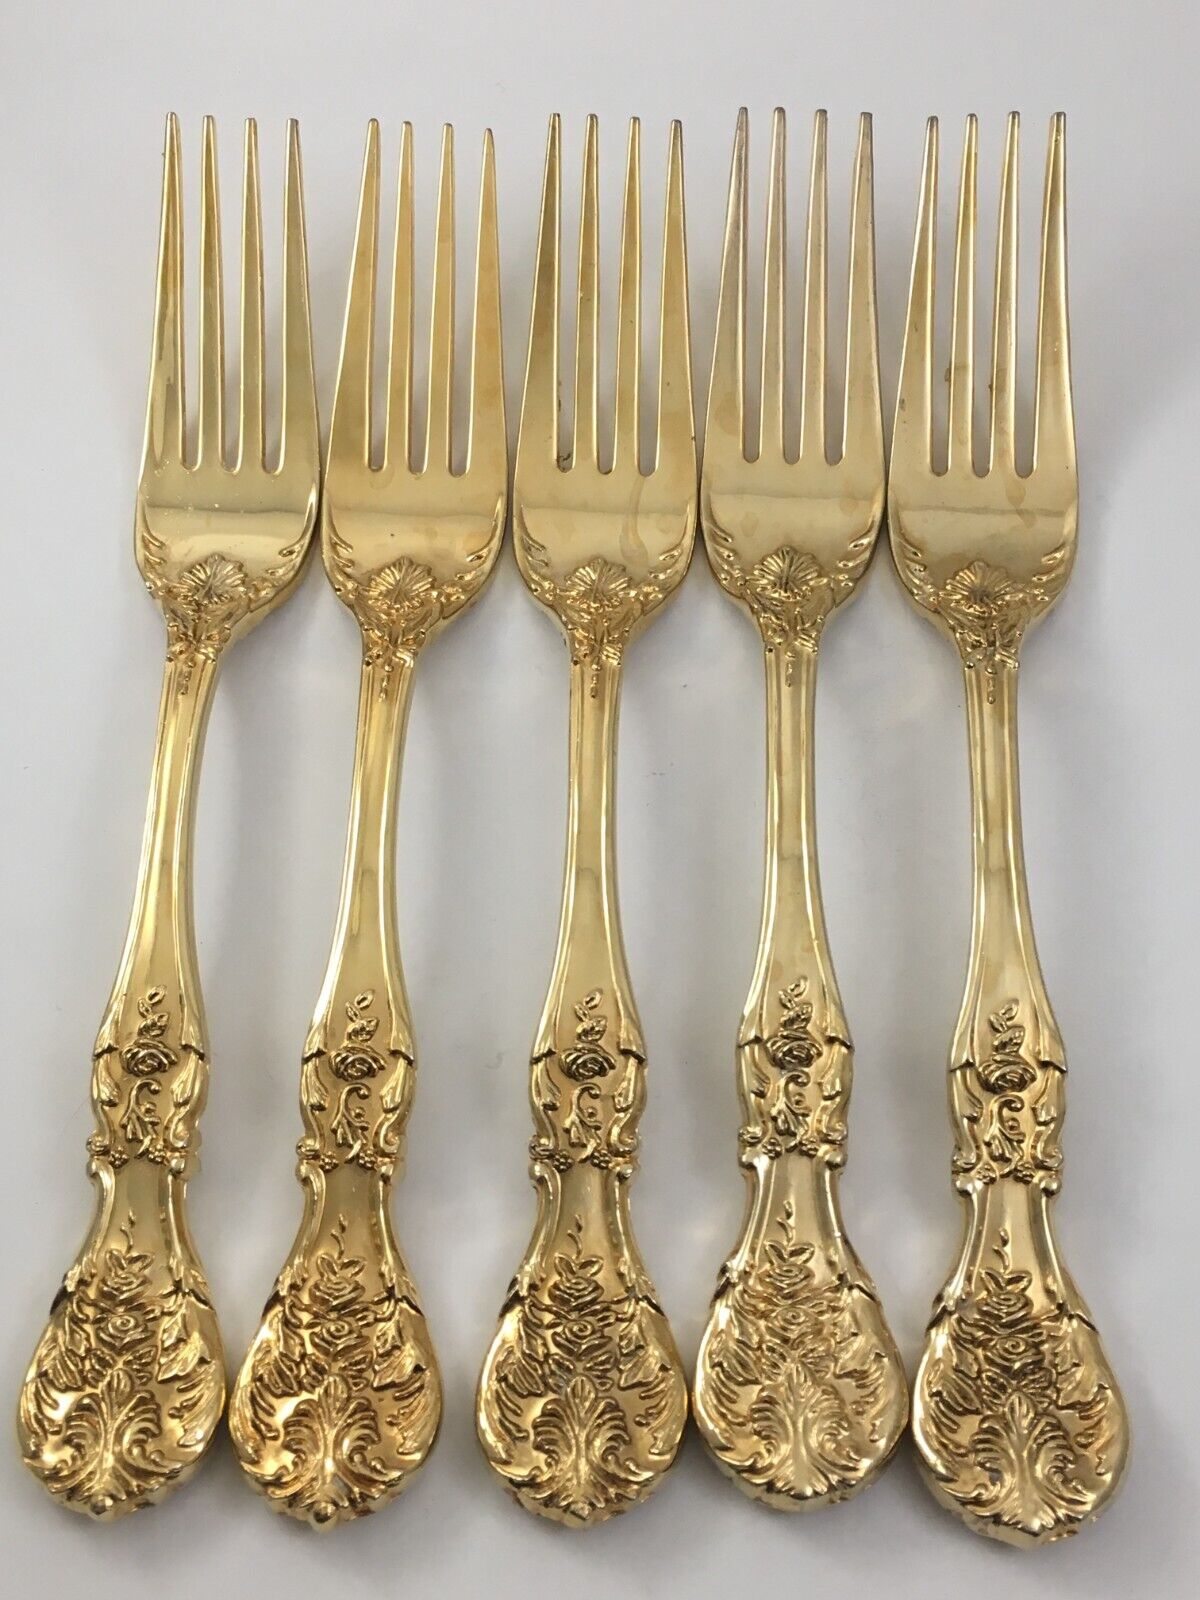 FB Rogers Golden French Rose Pattern 5 Dinner Forks Gold Electroplate Flatware